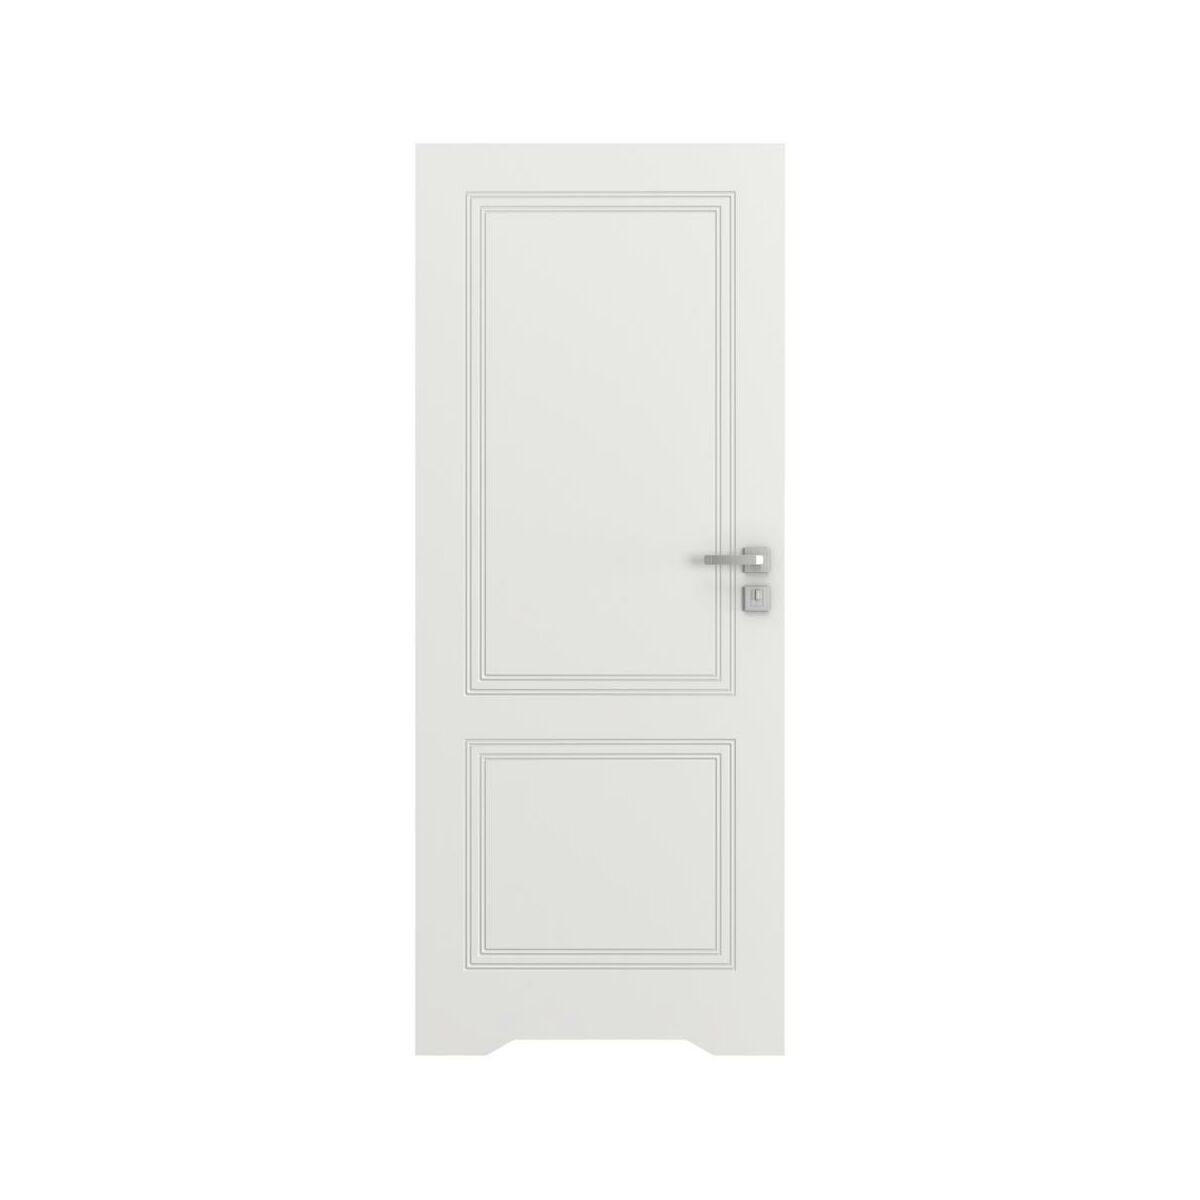 Drzwi wewnętrzne bezprzylgowe łazienkowe z podcięciem wentylacyjnym Vector V Białe 80 Prawe Porta